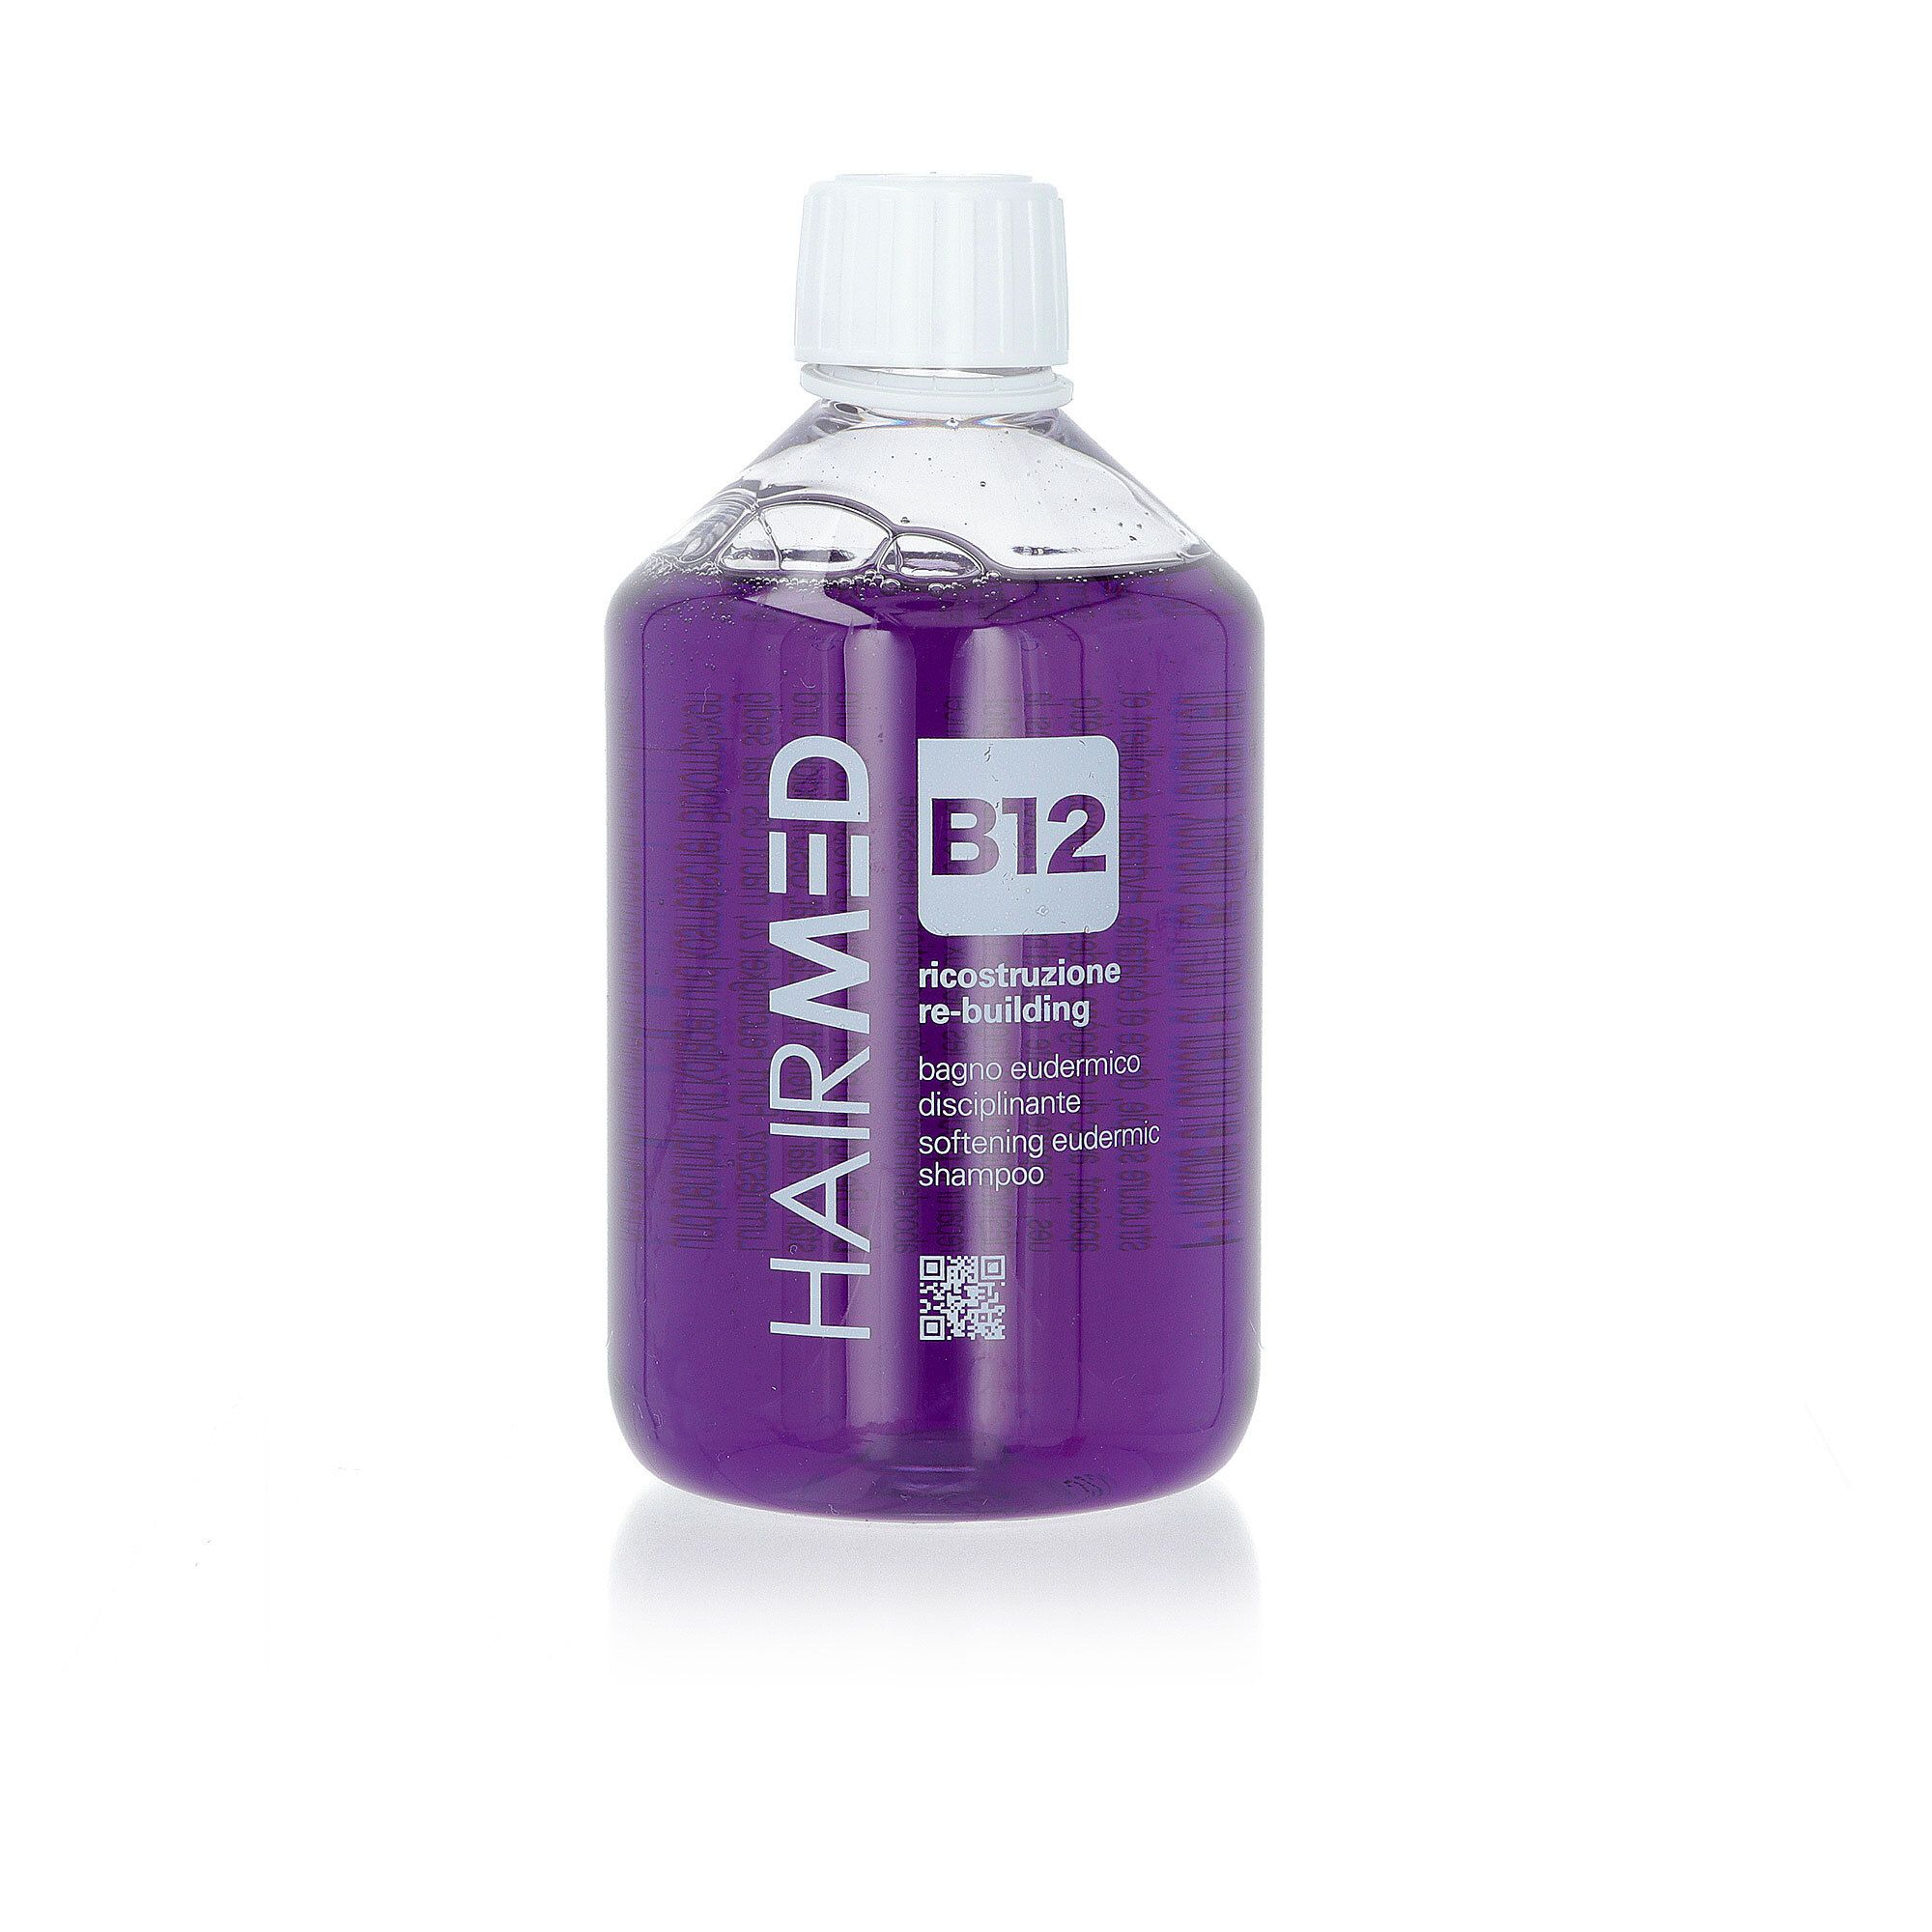 Bagno eudermico B12, shampoo disciplinante con collagene